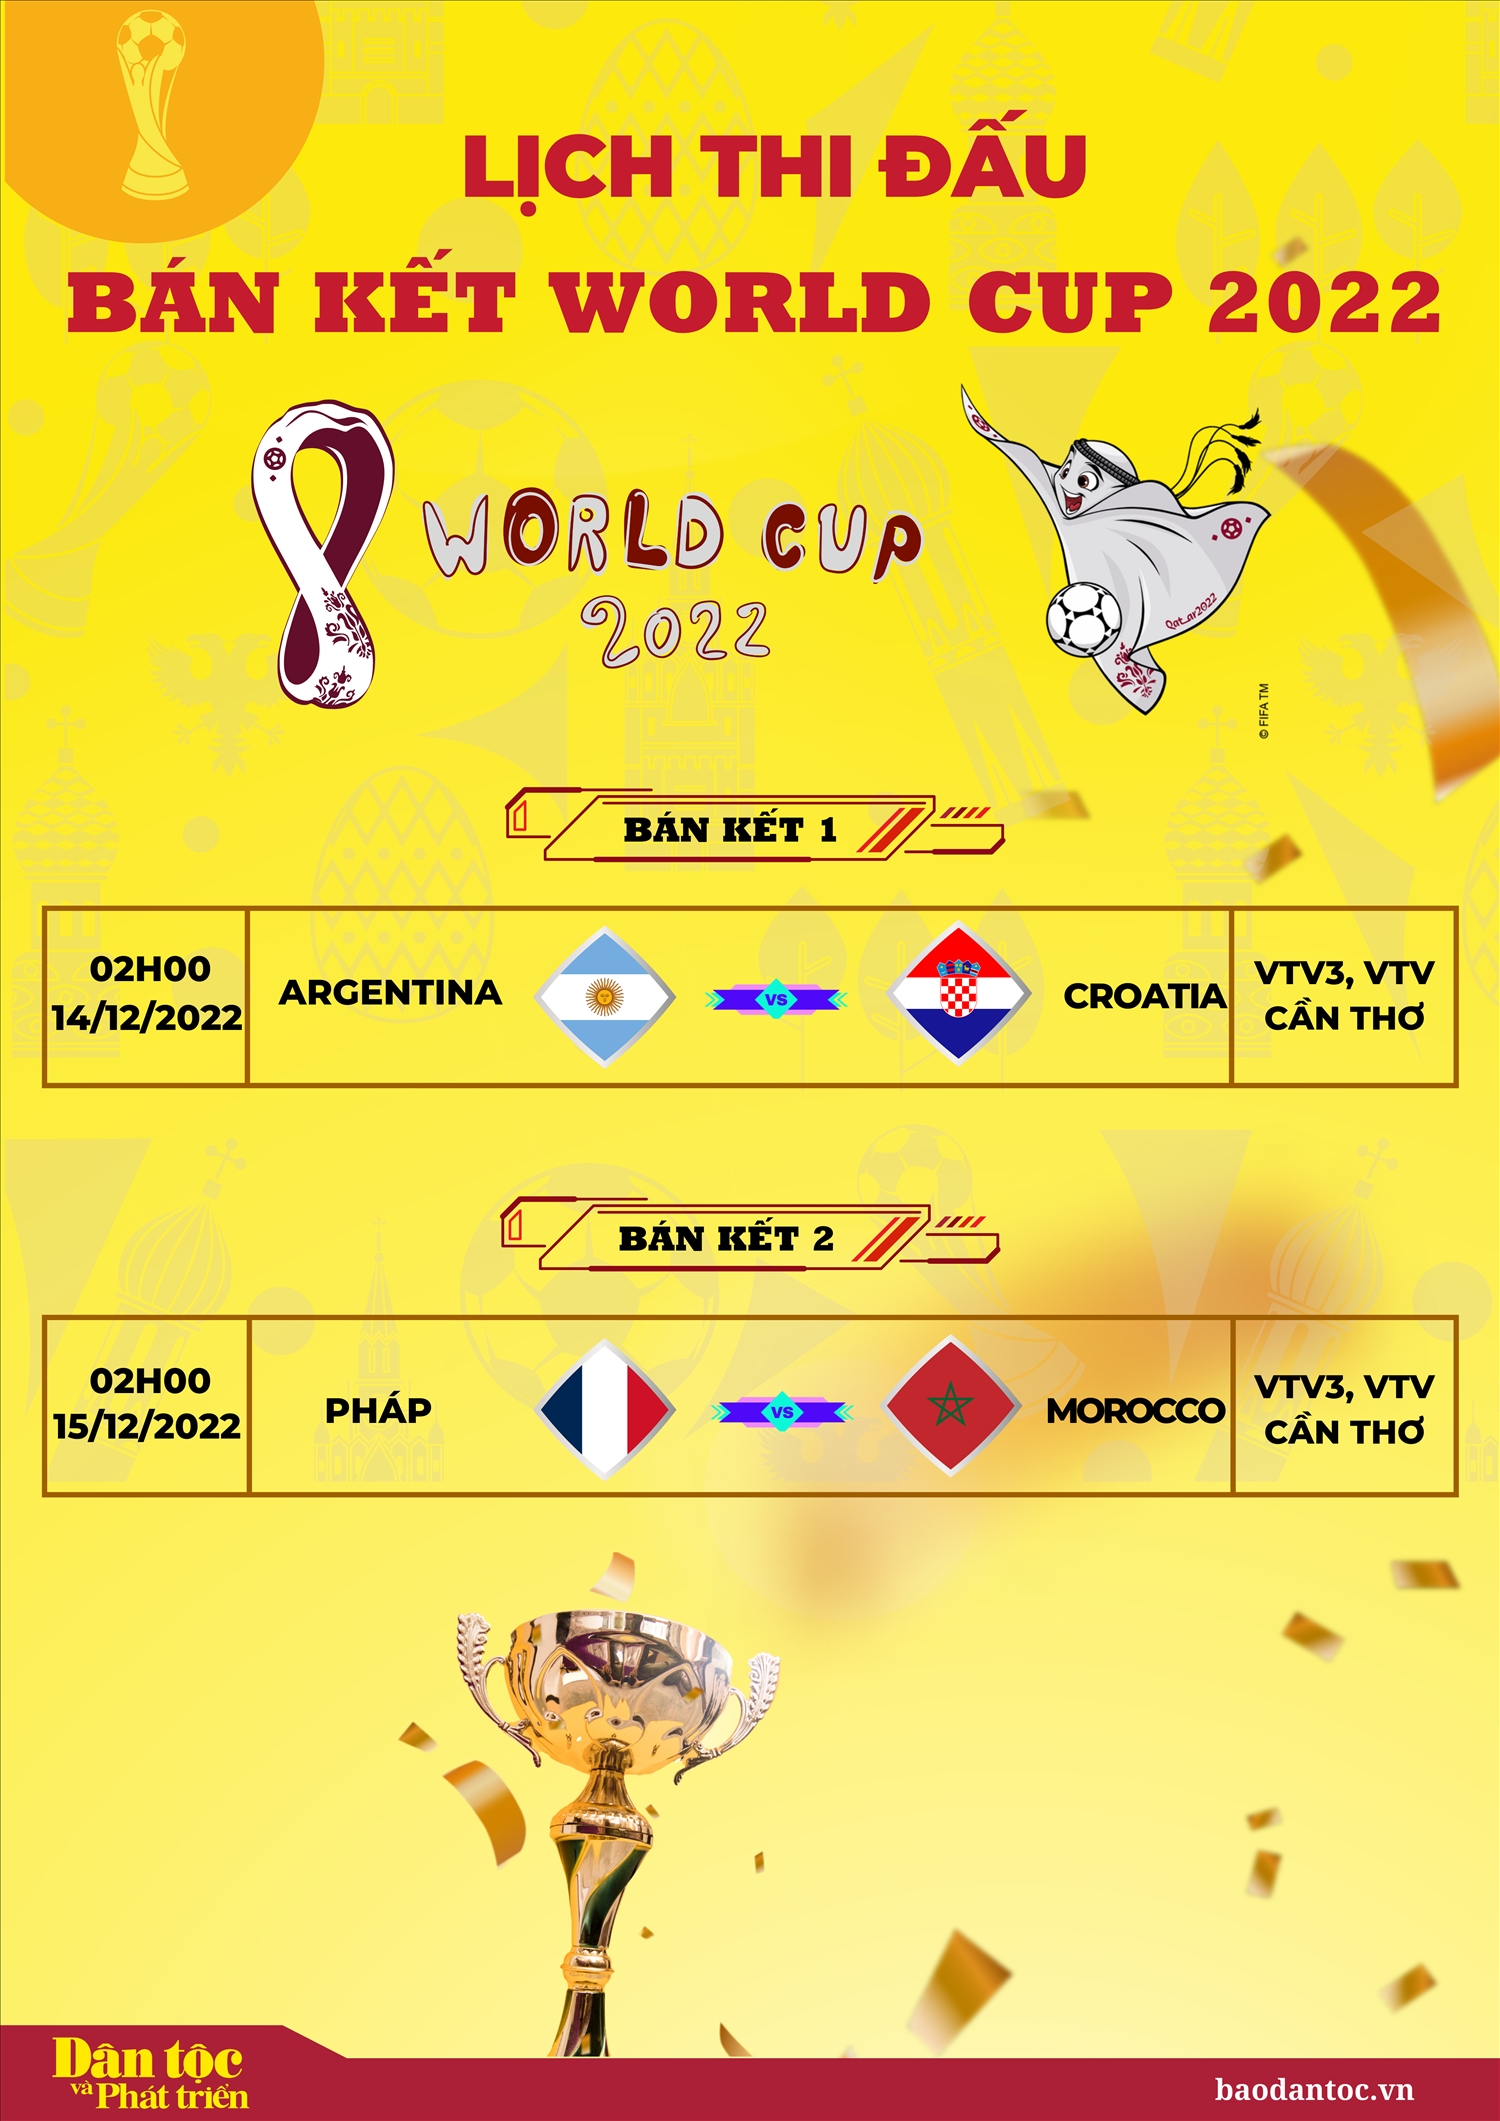 Lịch thi đấu bán kết World Cup 2022 theo giờ Việt Nam Báo Dân tộc và